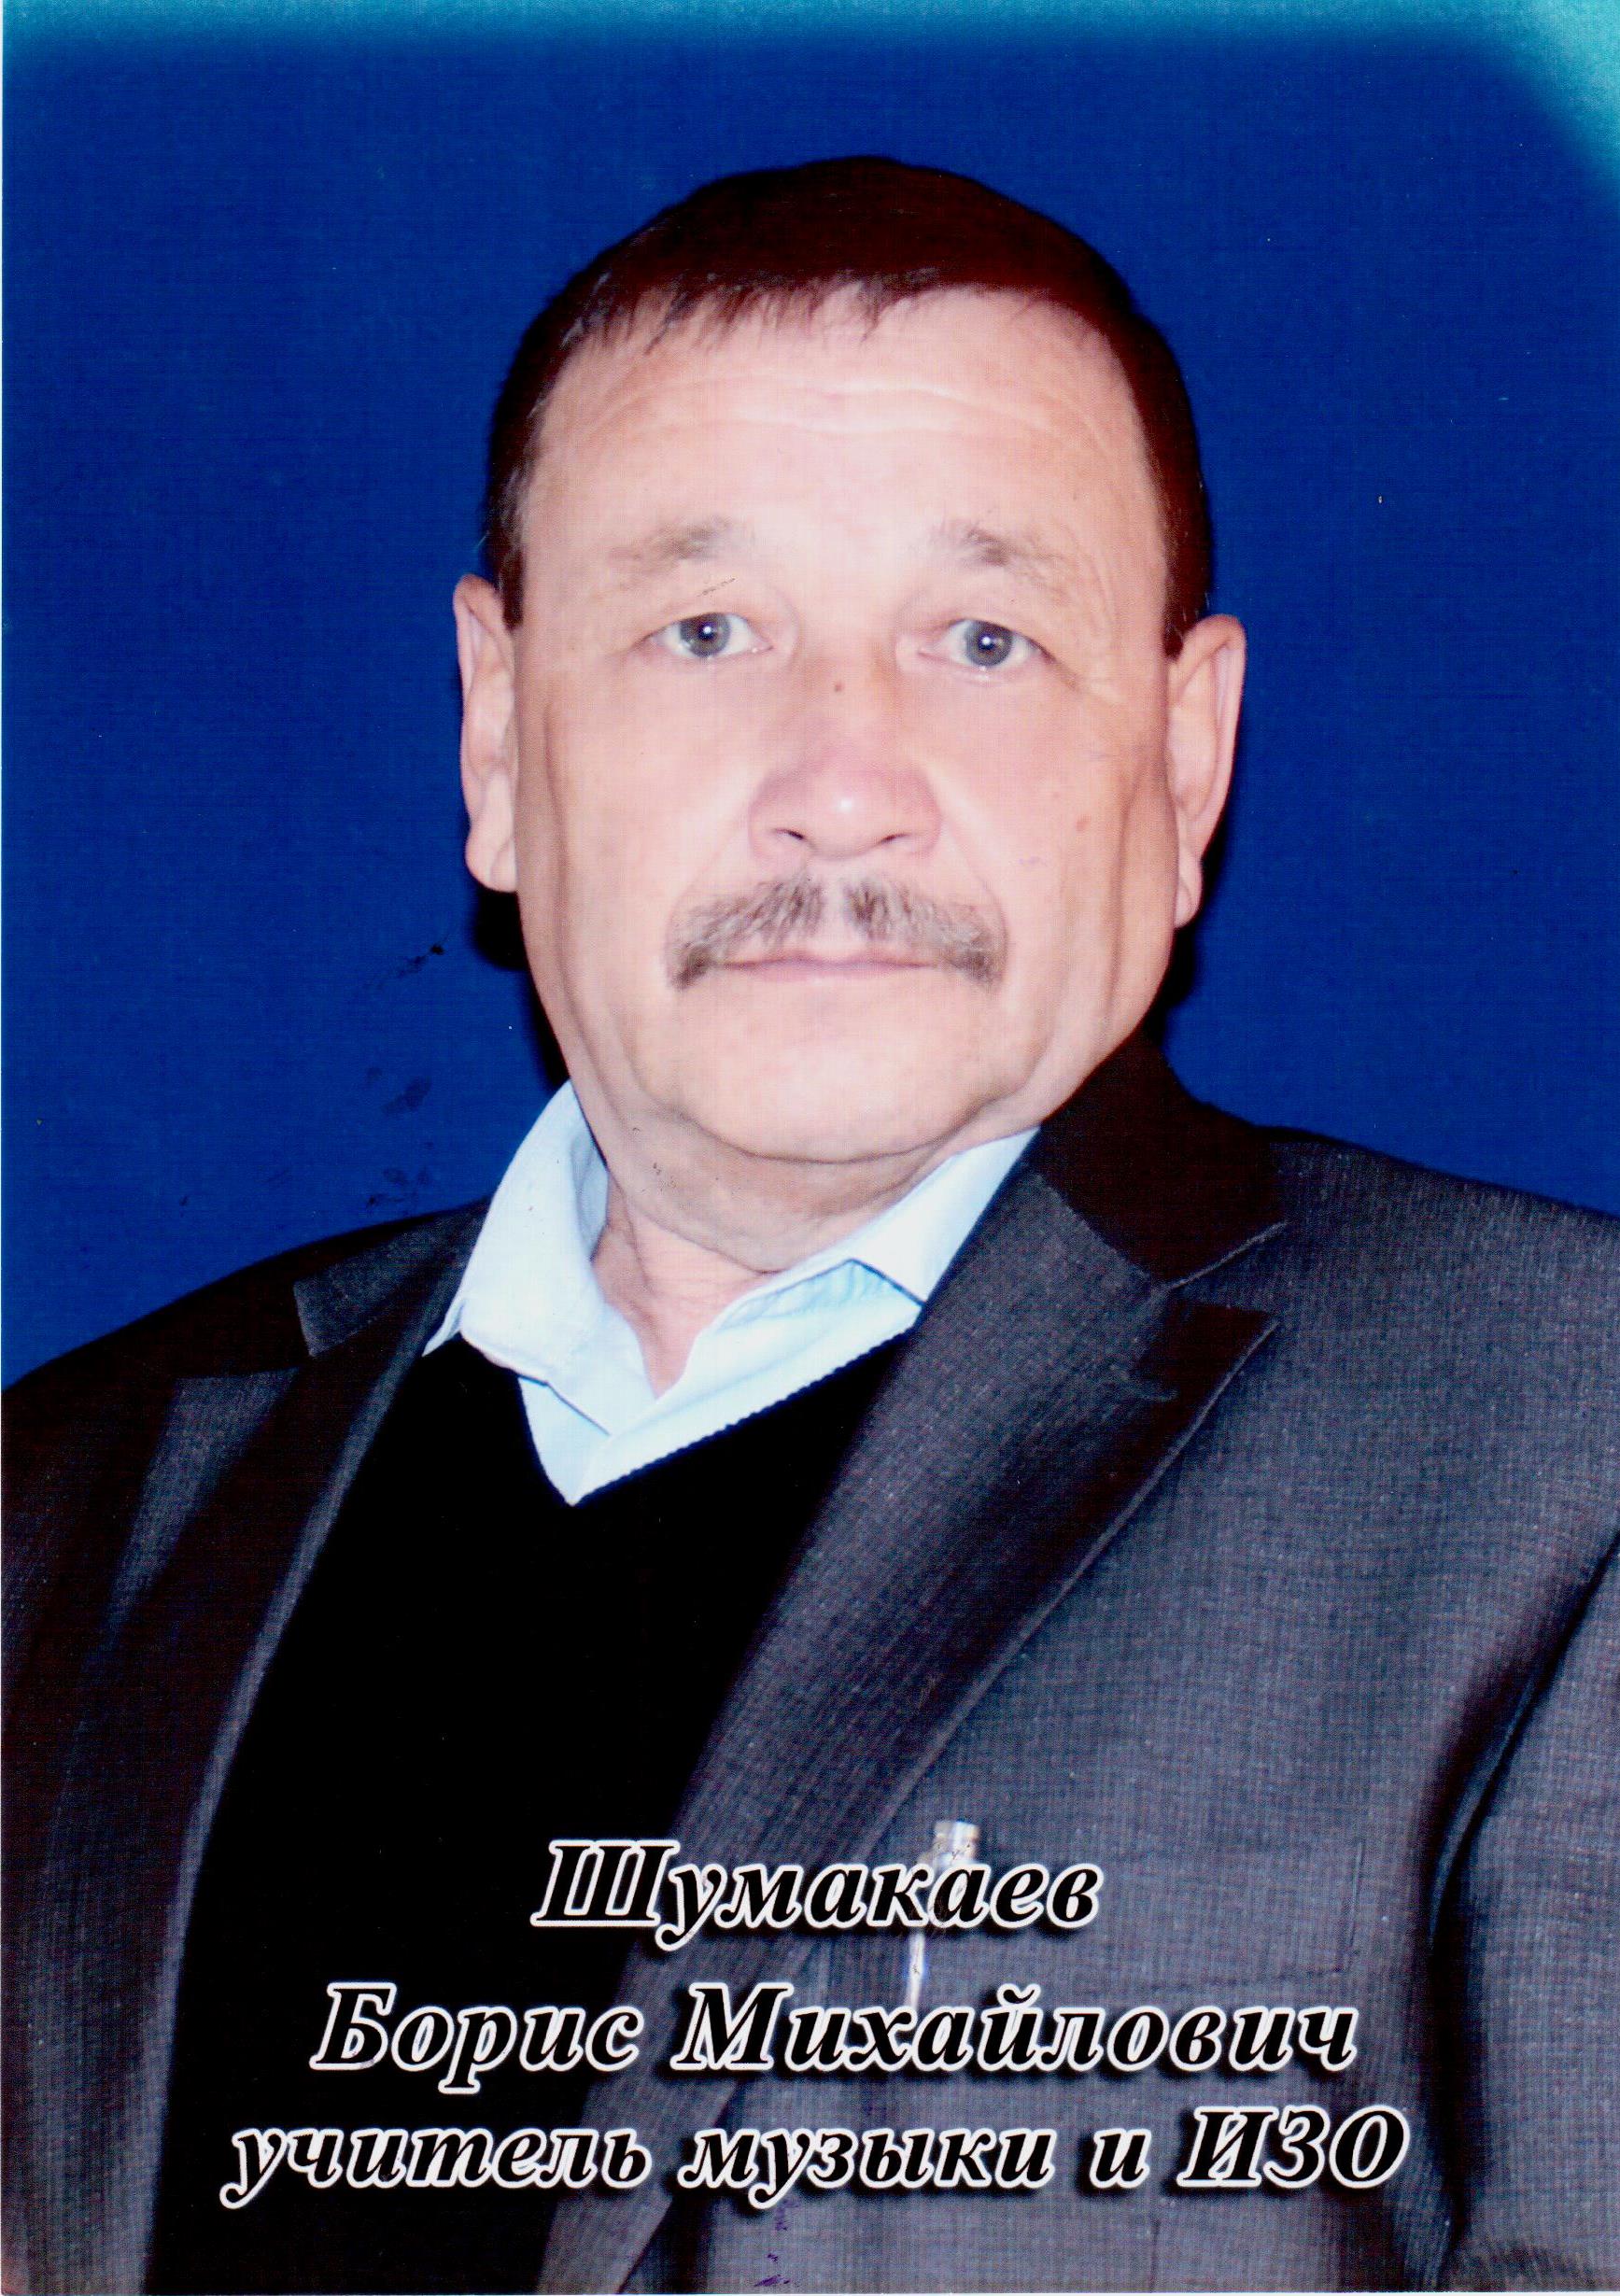 Шумакаев Борис Михайлович.